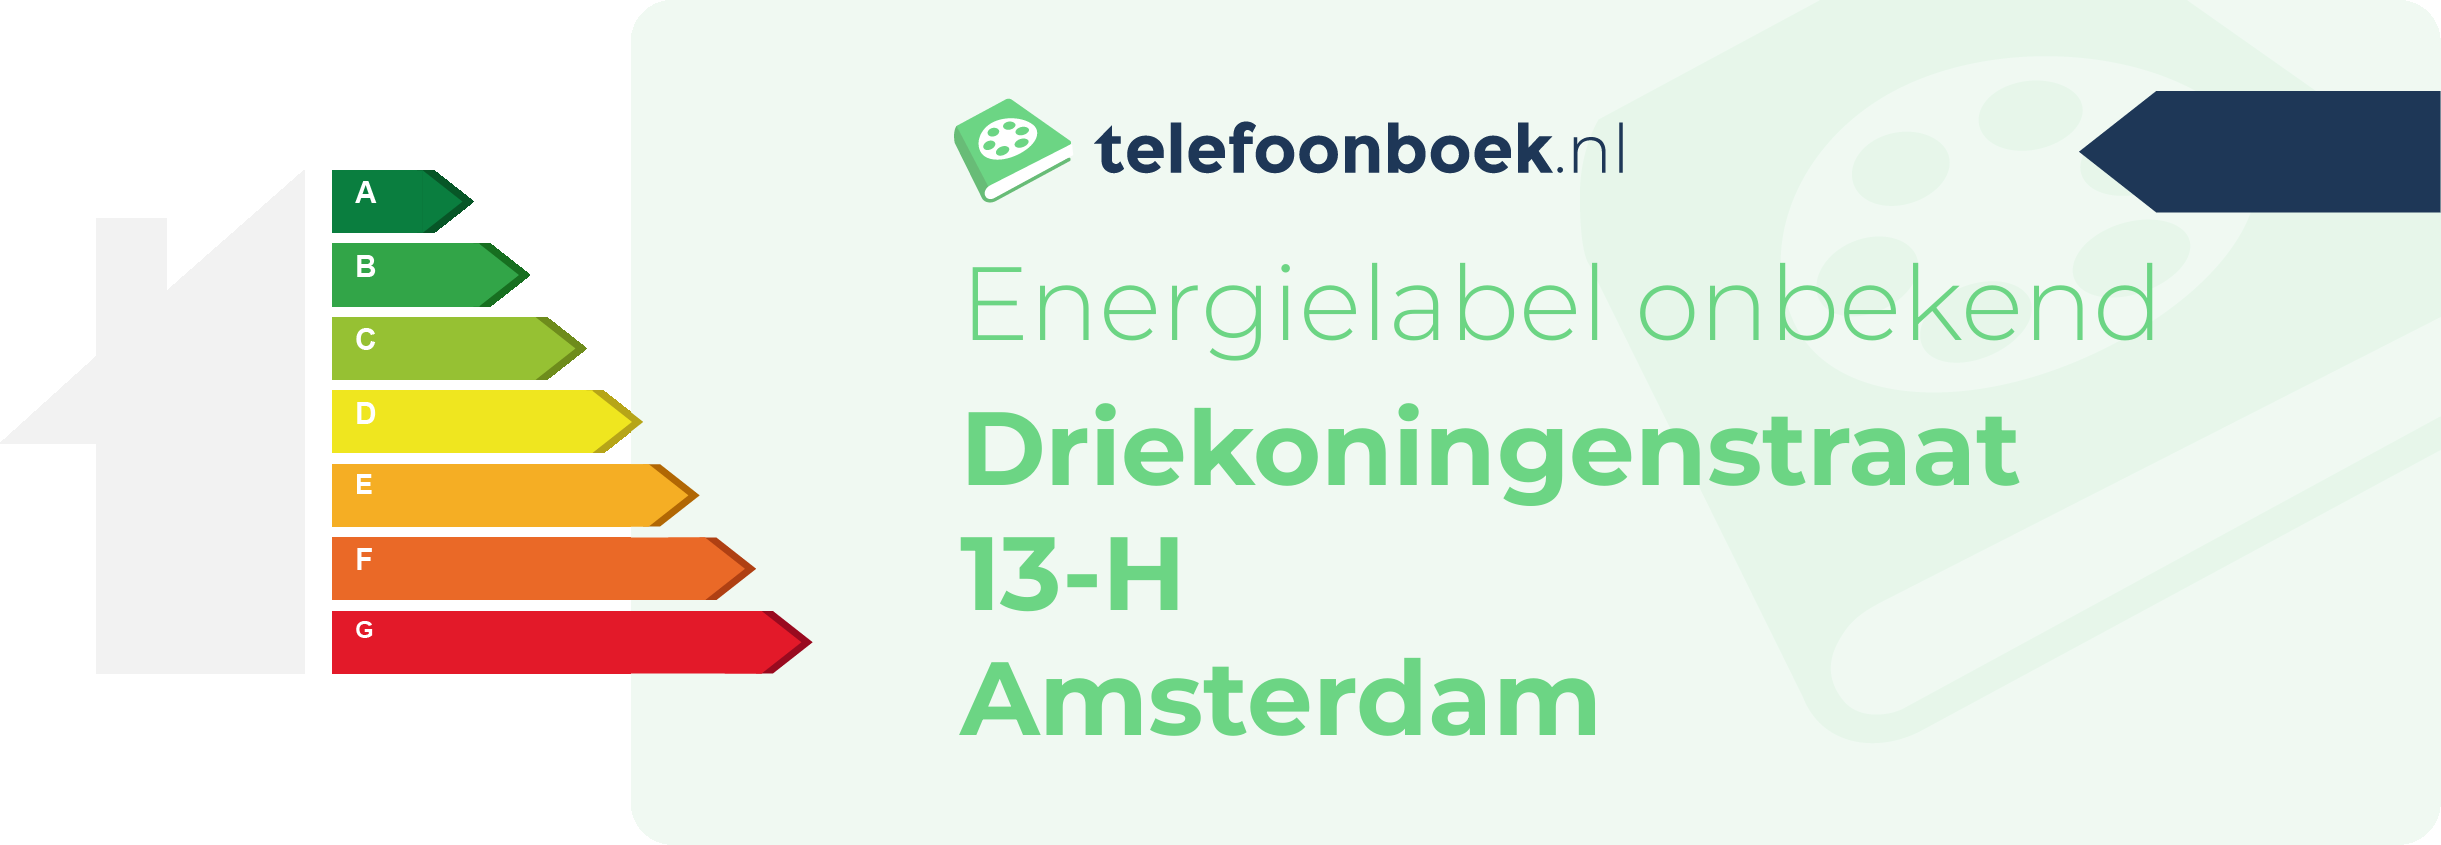 Energielabel Driekoningenstraat 13-H Amsterdam